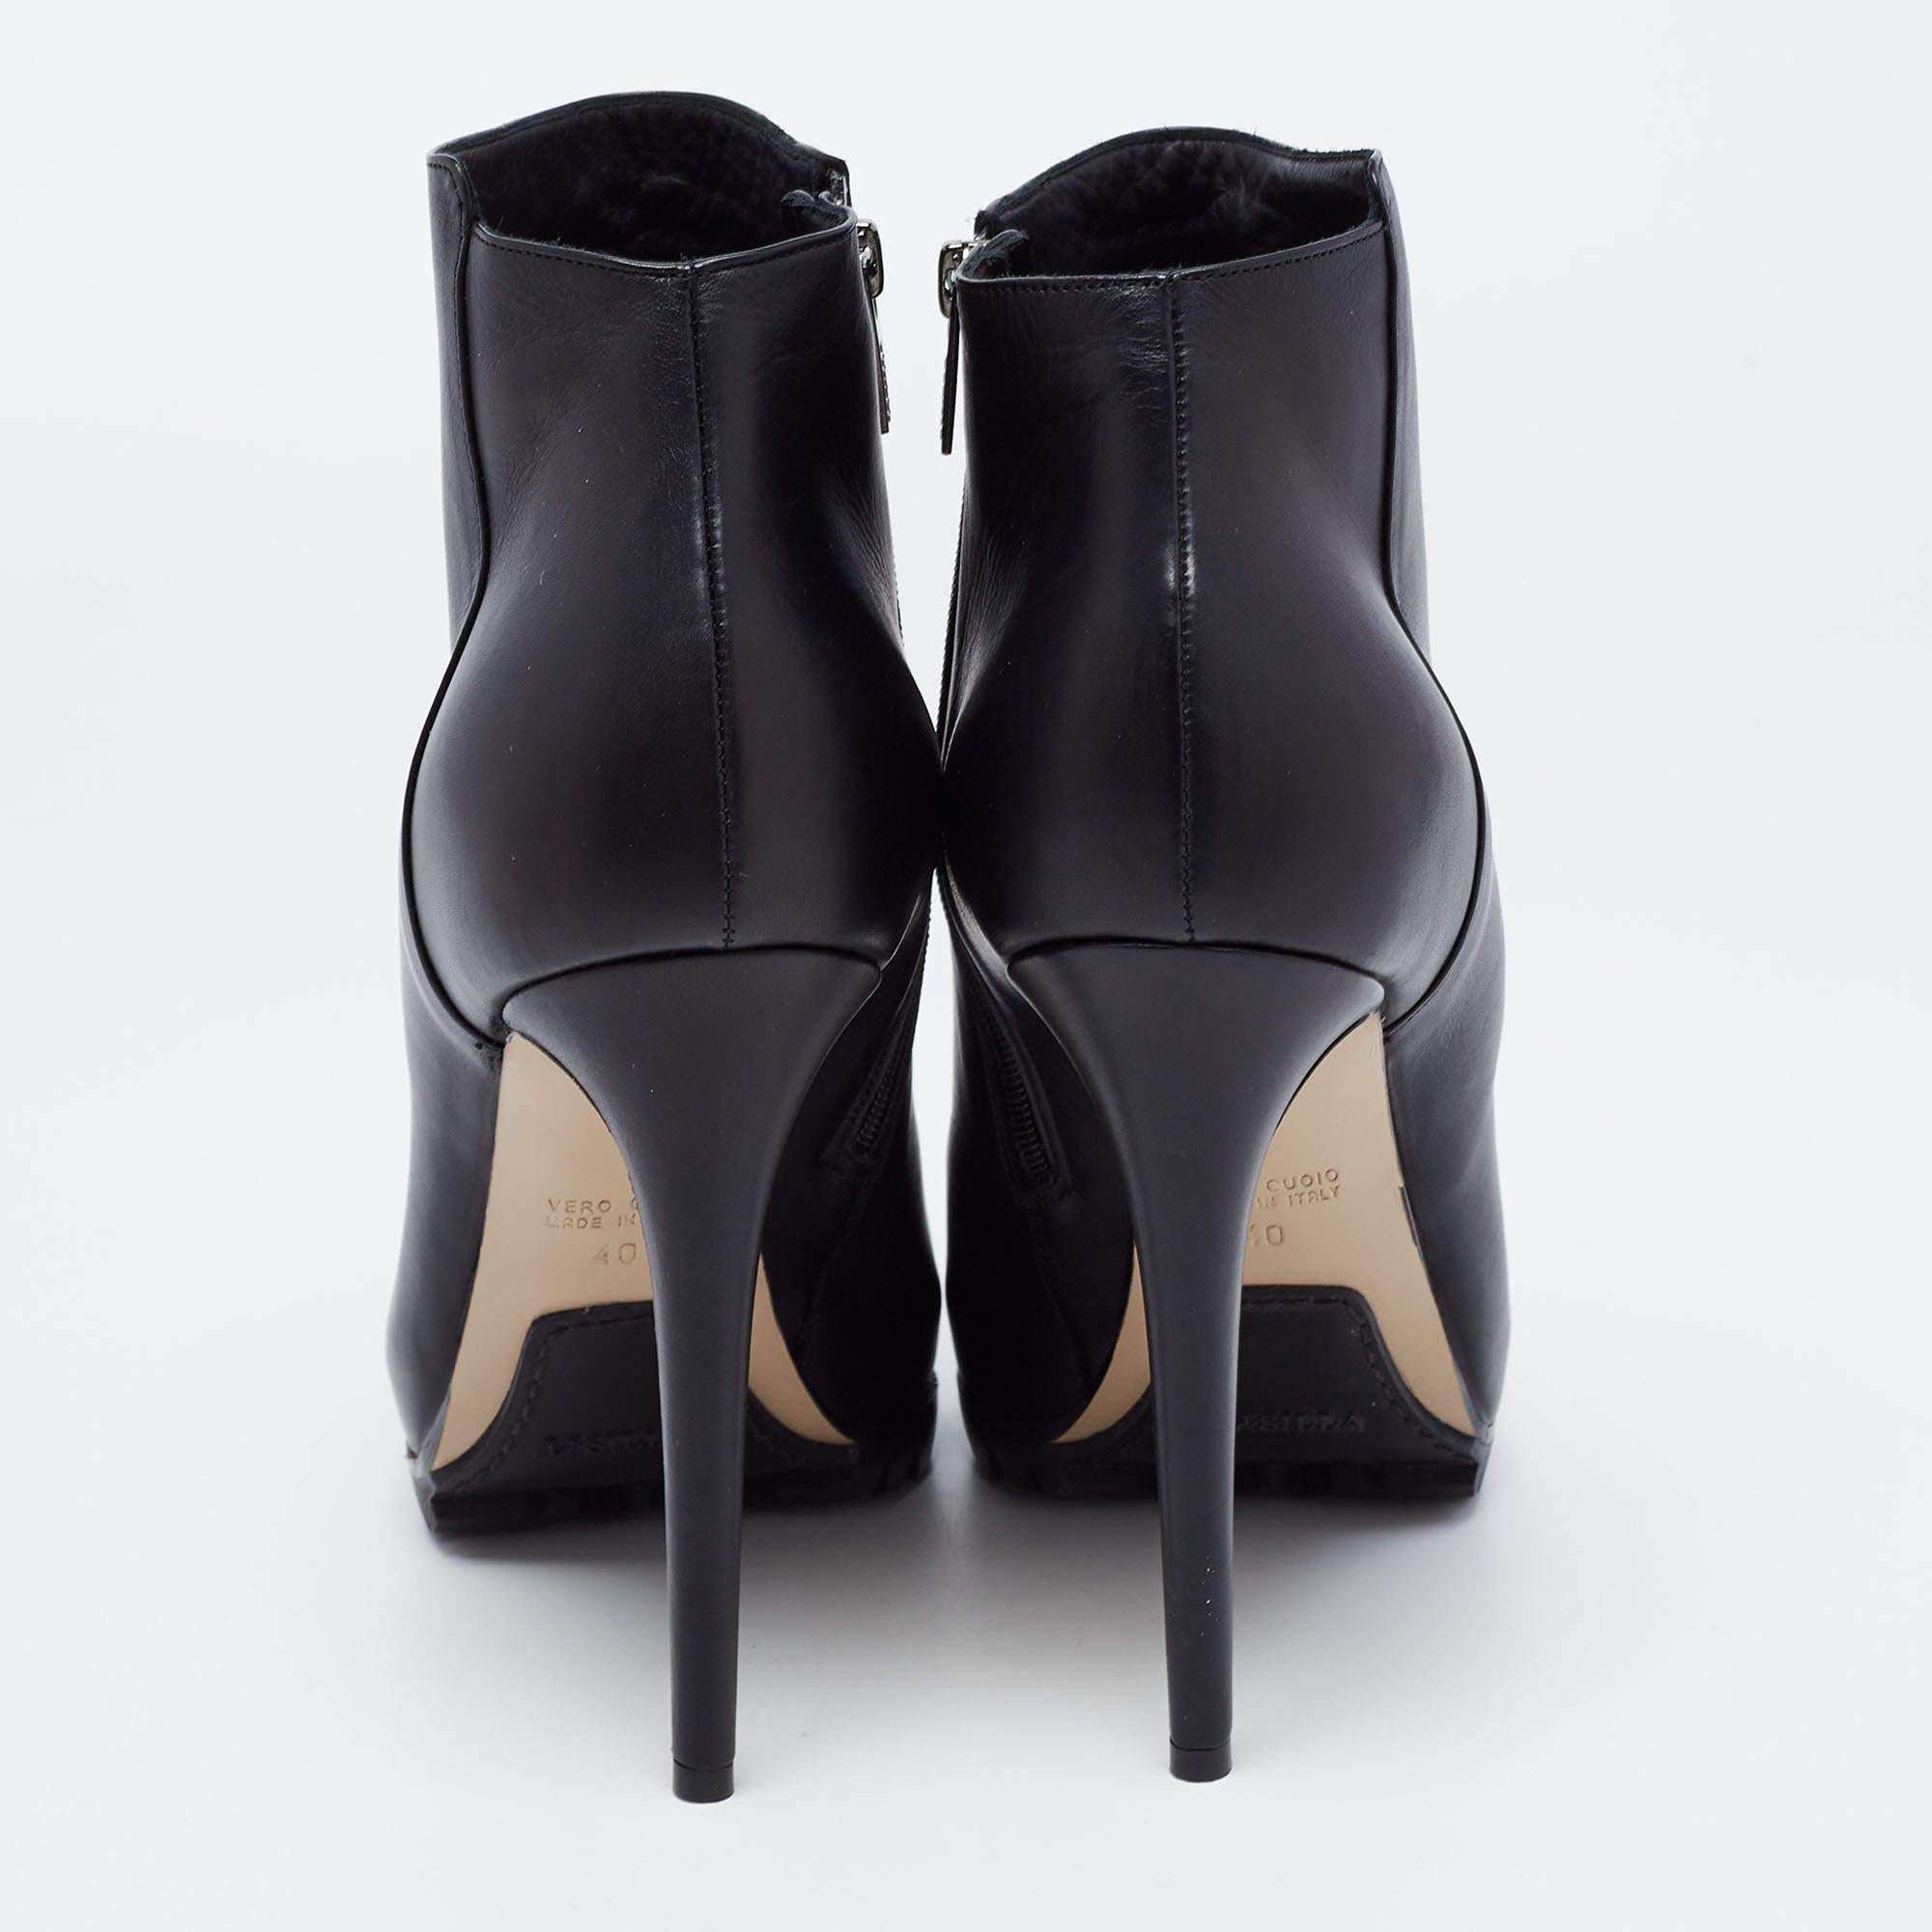 Le Silla Black Leather Platform Ankle Boots Size 40 1